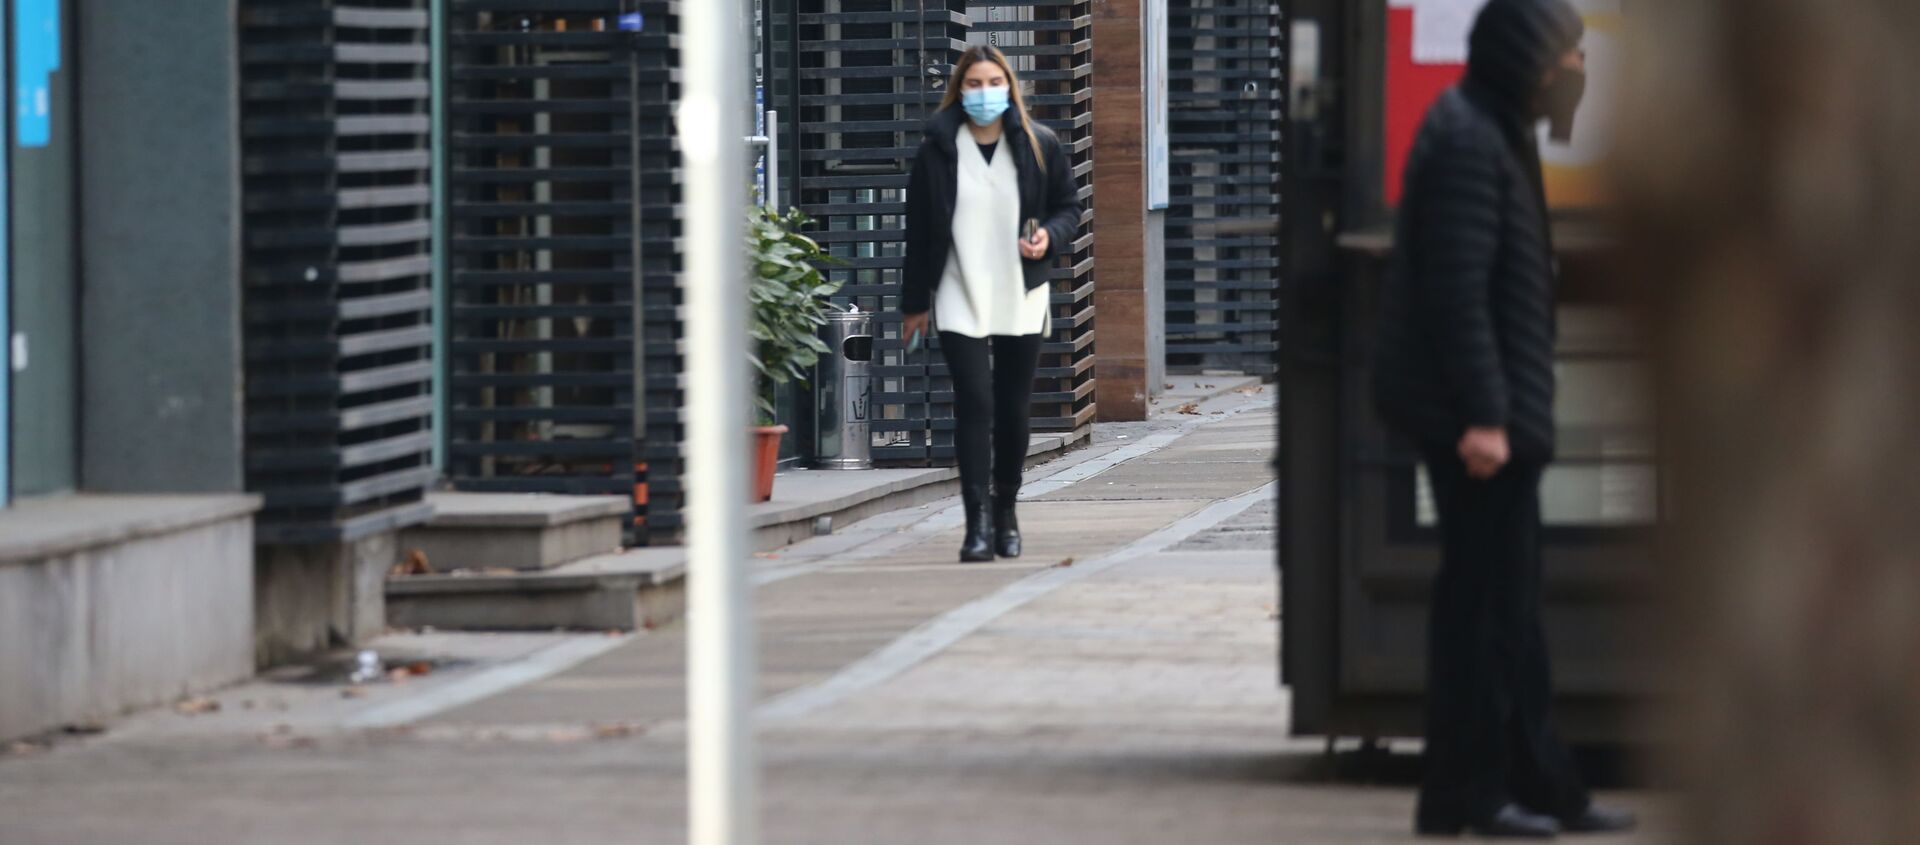 Эпидемия коронавируса и социальная дистанция - девушка в маске идет по улице - Sputnik Грузия, 1920, 15.02.2021